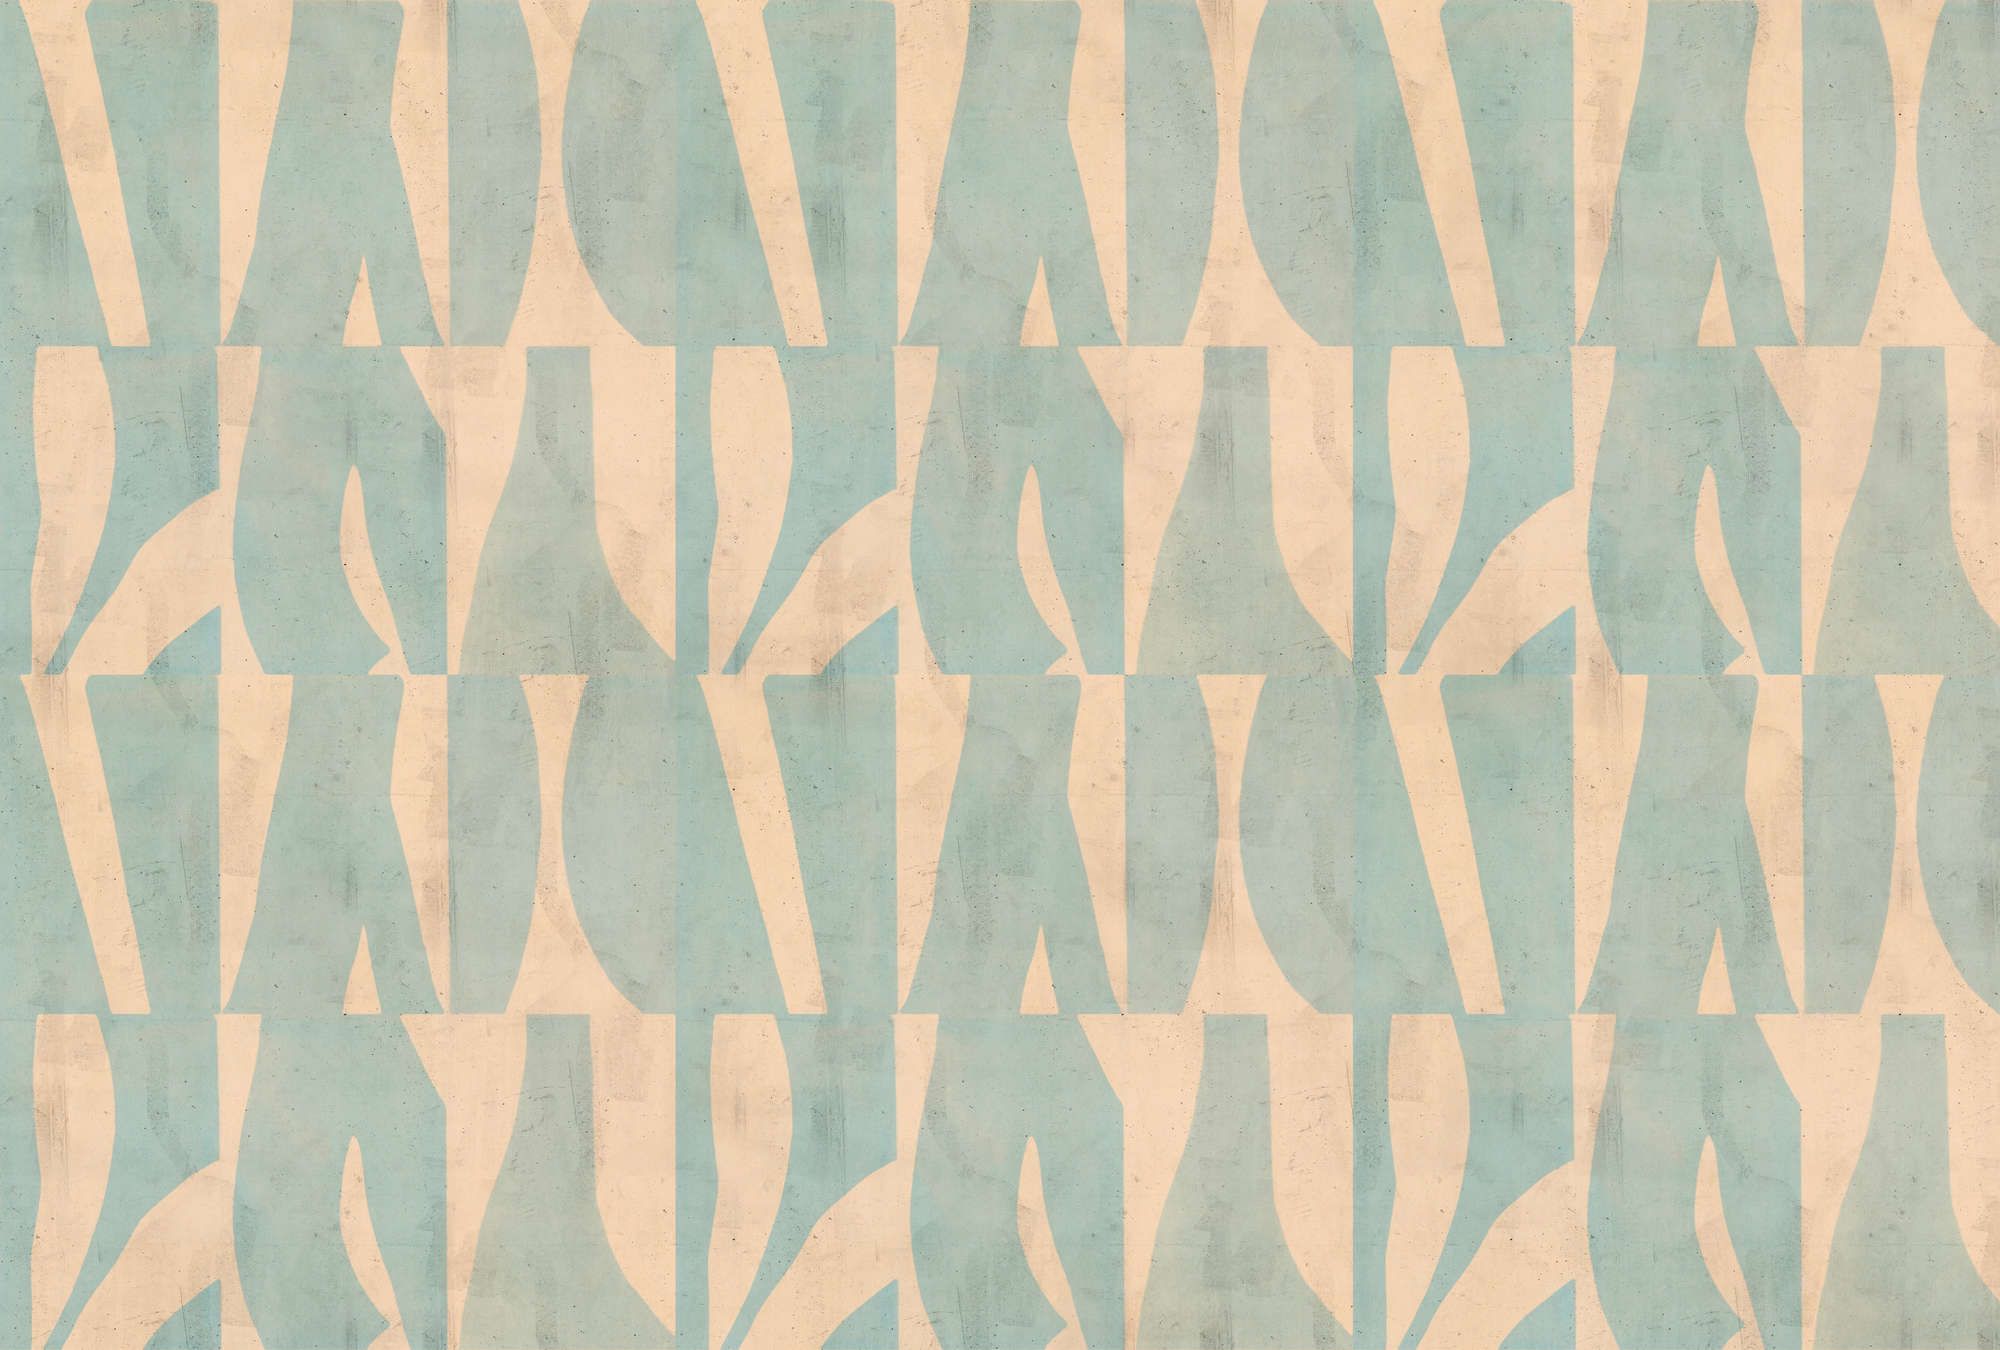             papier peint en papier panoramique »laila« - motif graphique sur structure d'enduit de béton - beige, vert menthe | Intissé mat et lisse
        